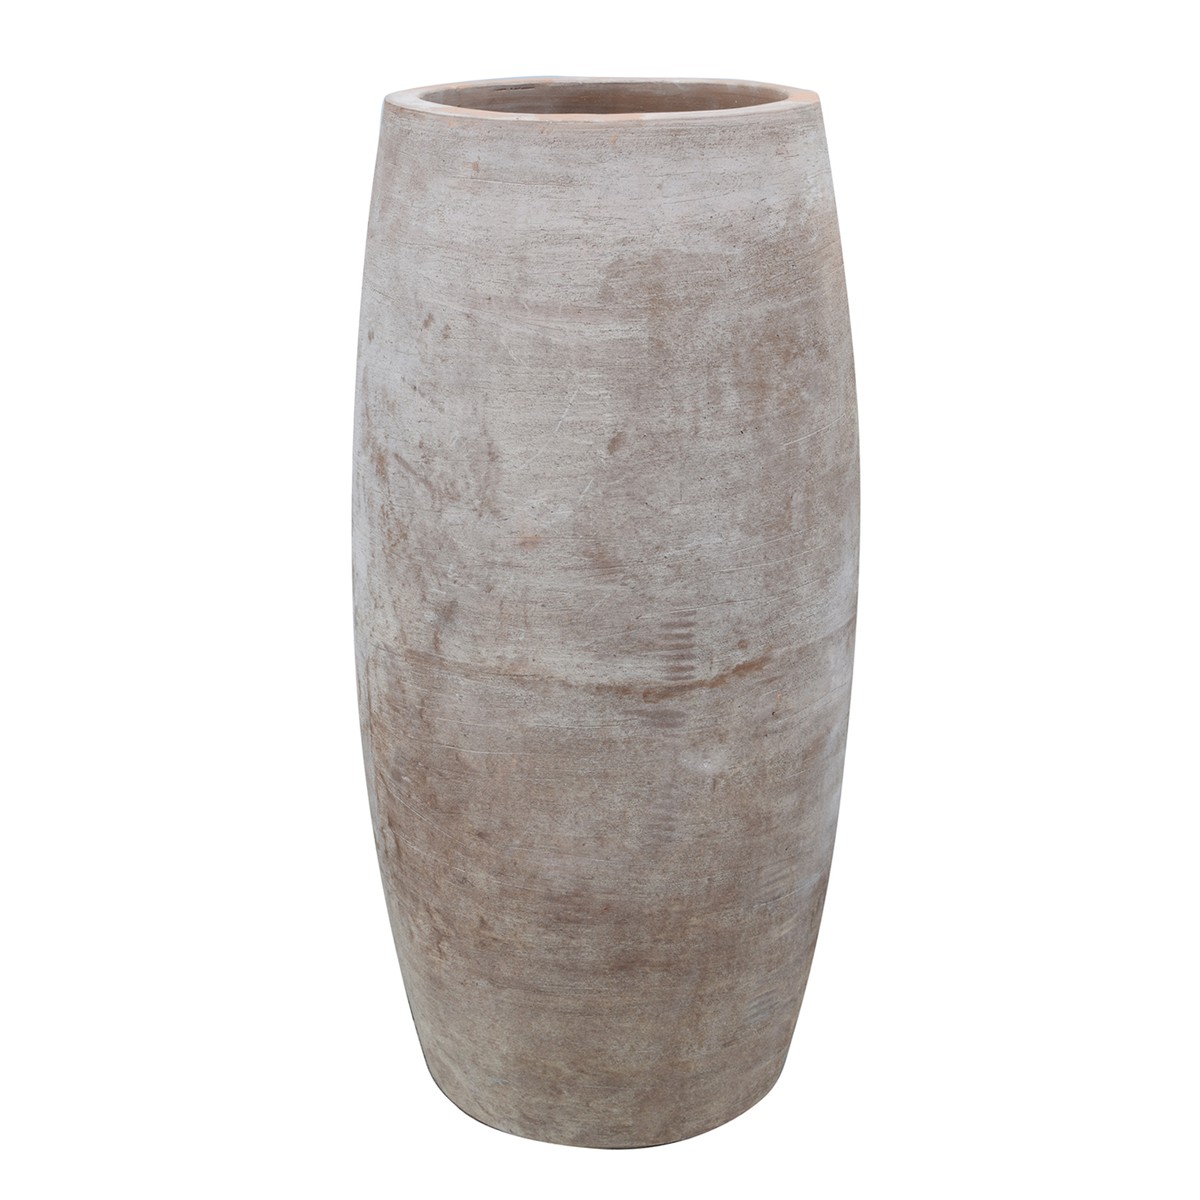   Vase Haut Crafted Brun terre de Sienne brulée 38x80cm